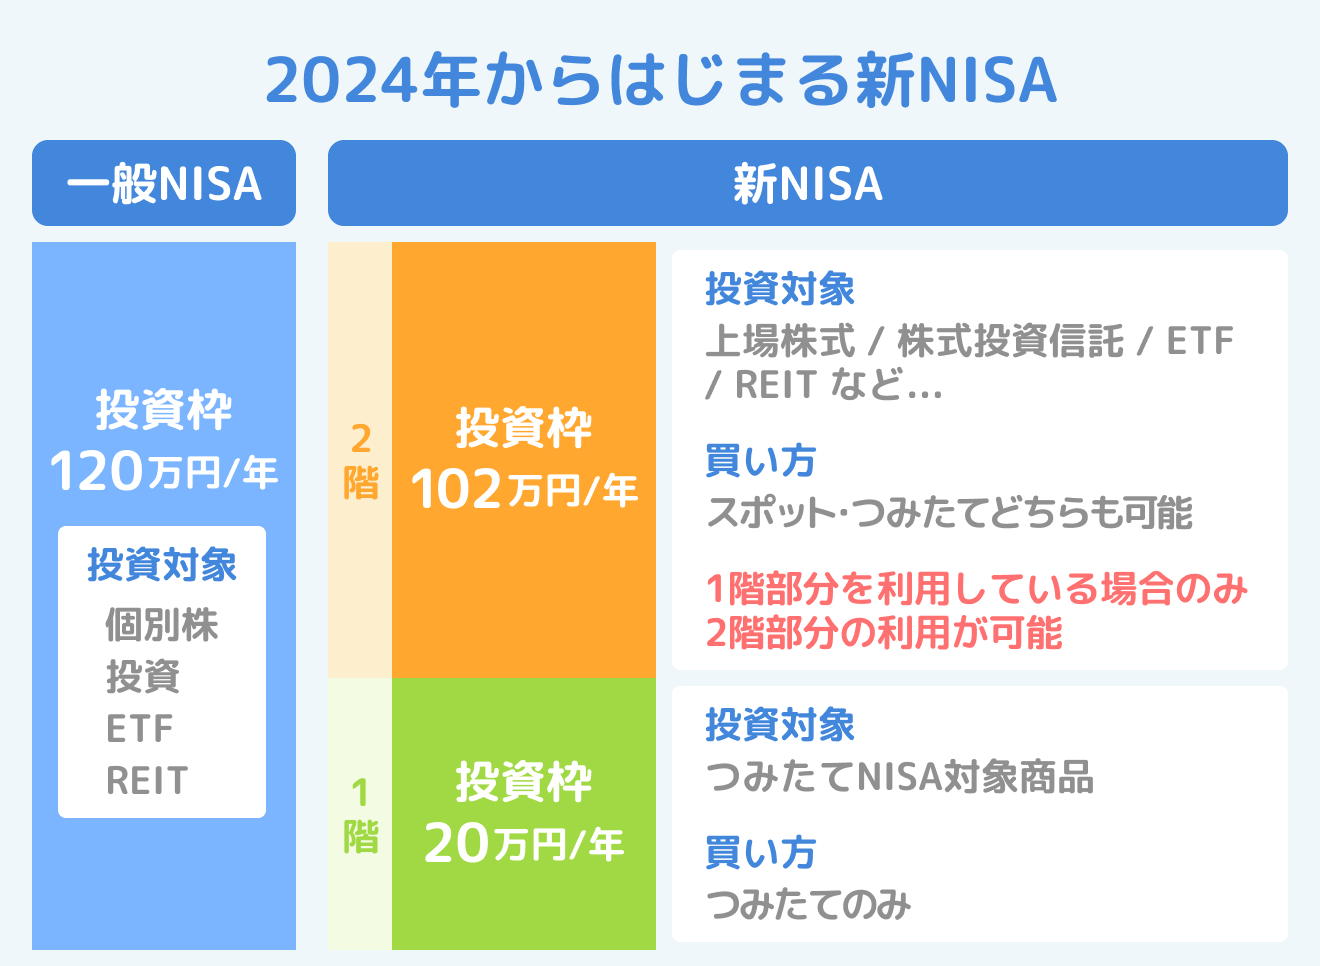 2014年からはじまる新NISA